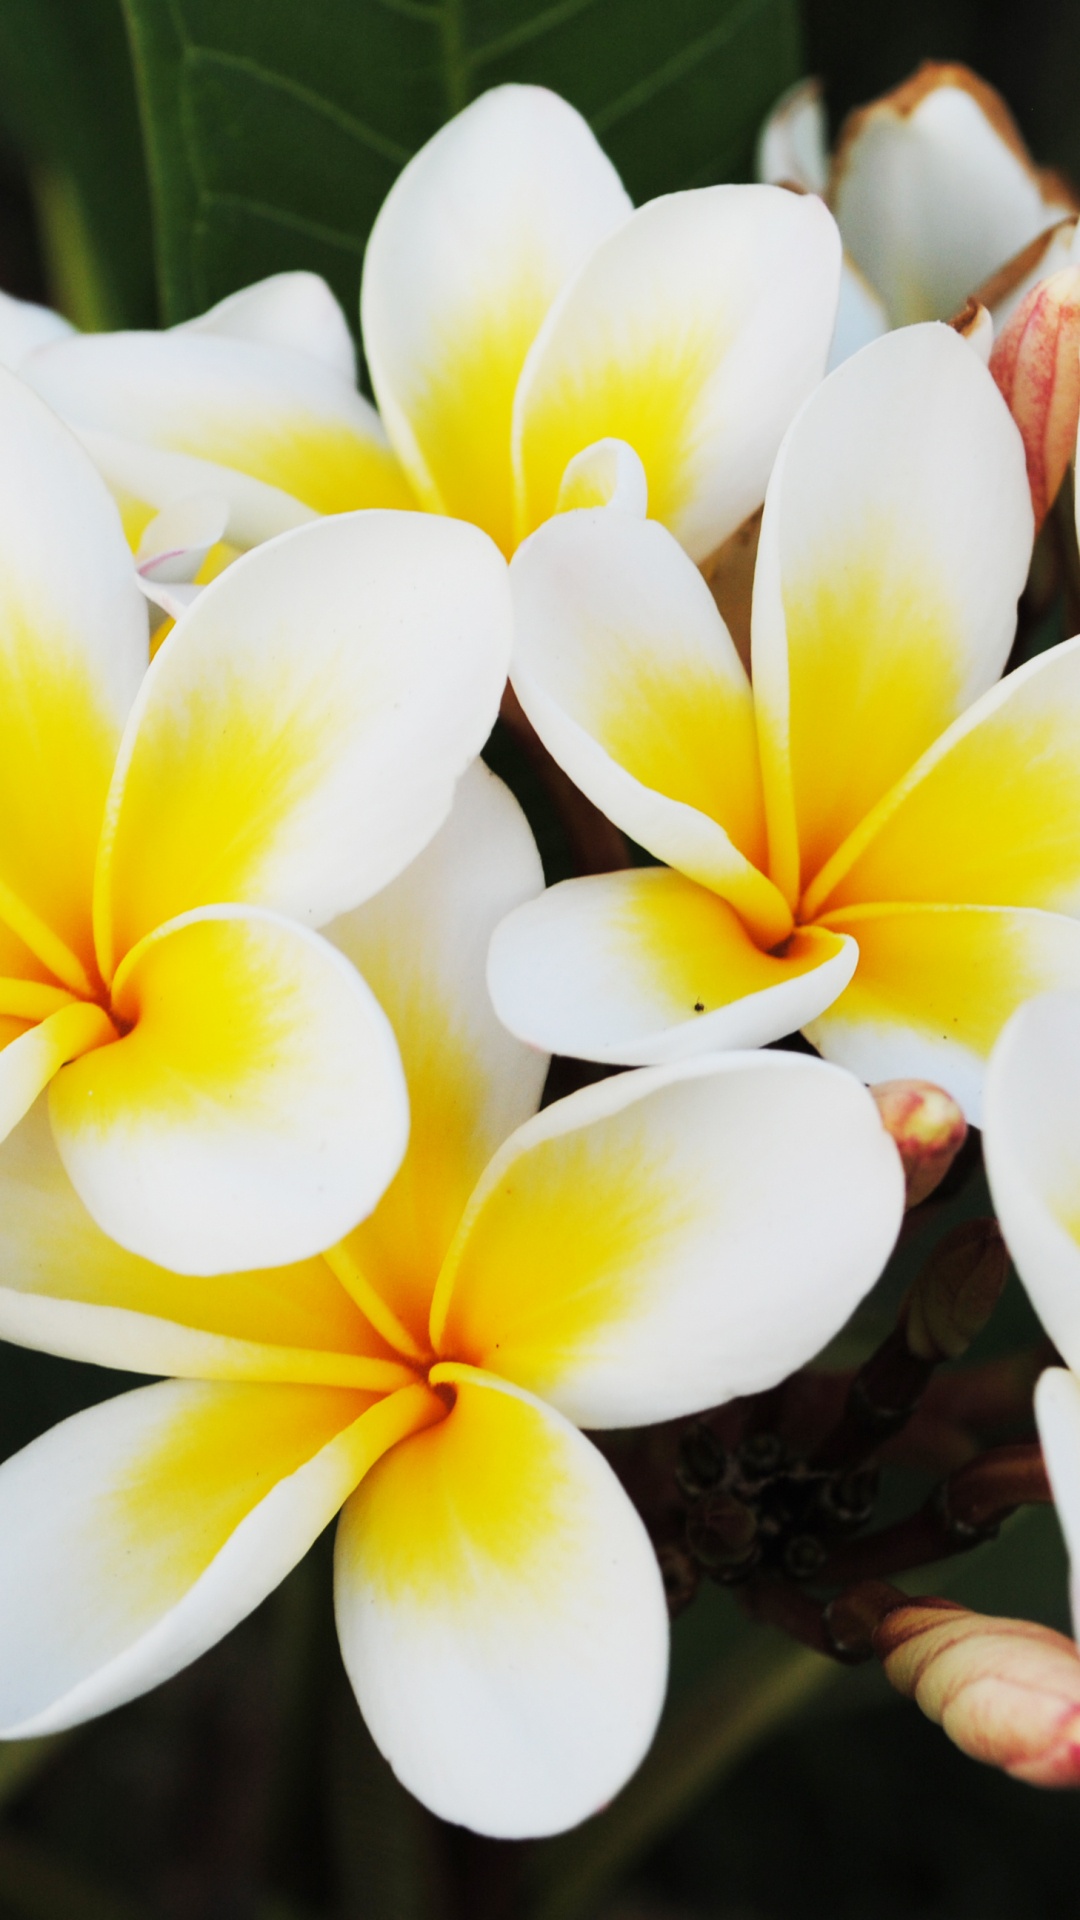 Weiße Und Gelbe Blume in Nahaufnahmen. Wallpaper in 1080x1920 Resolution